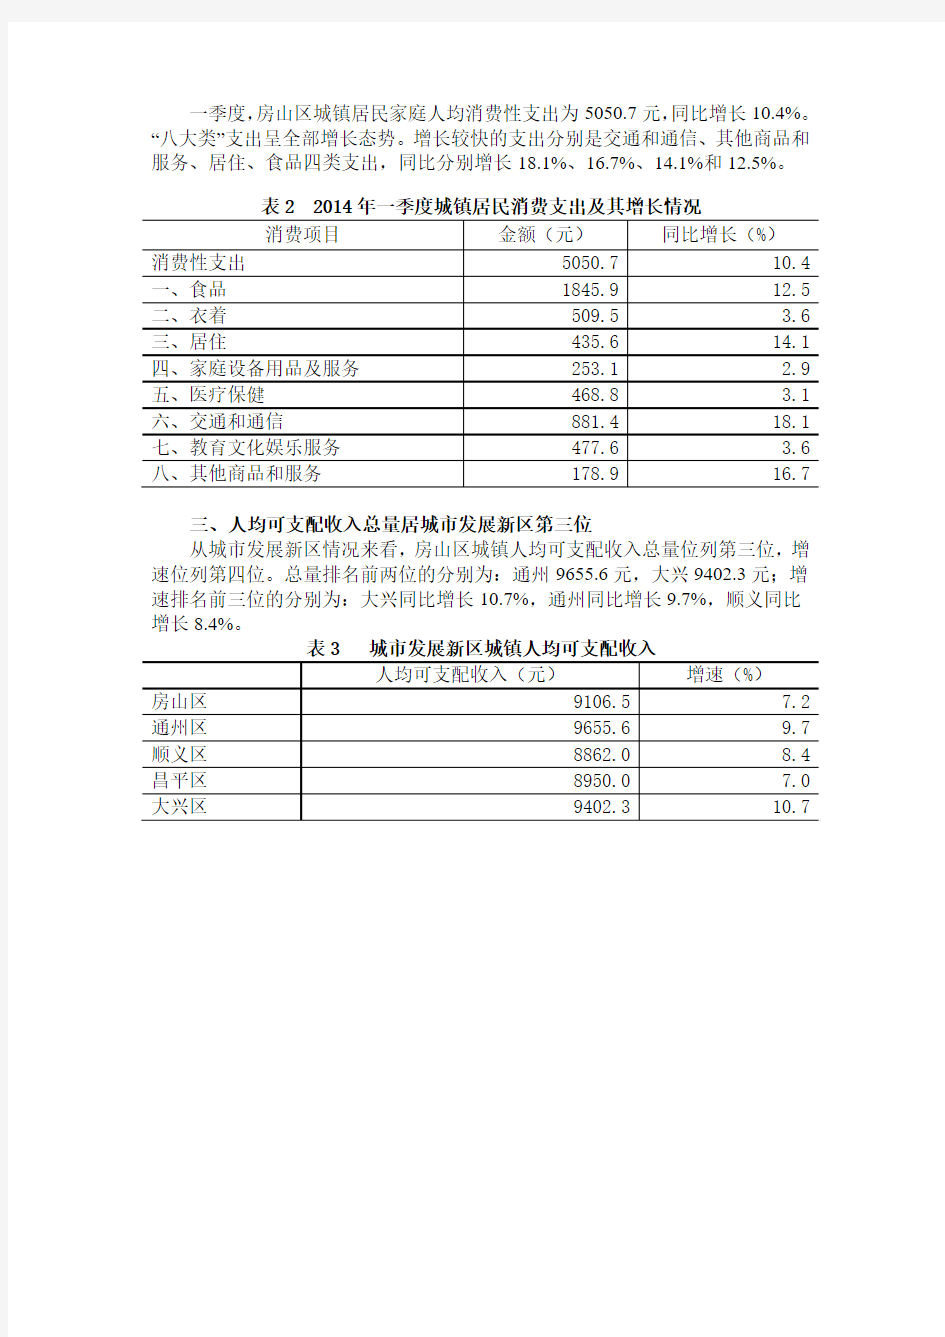 2014年1季度北京市房山区城镇居民收支情况